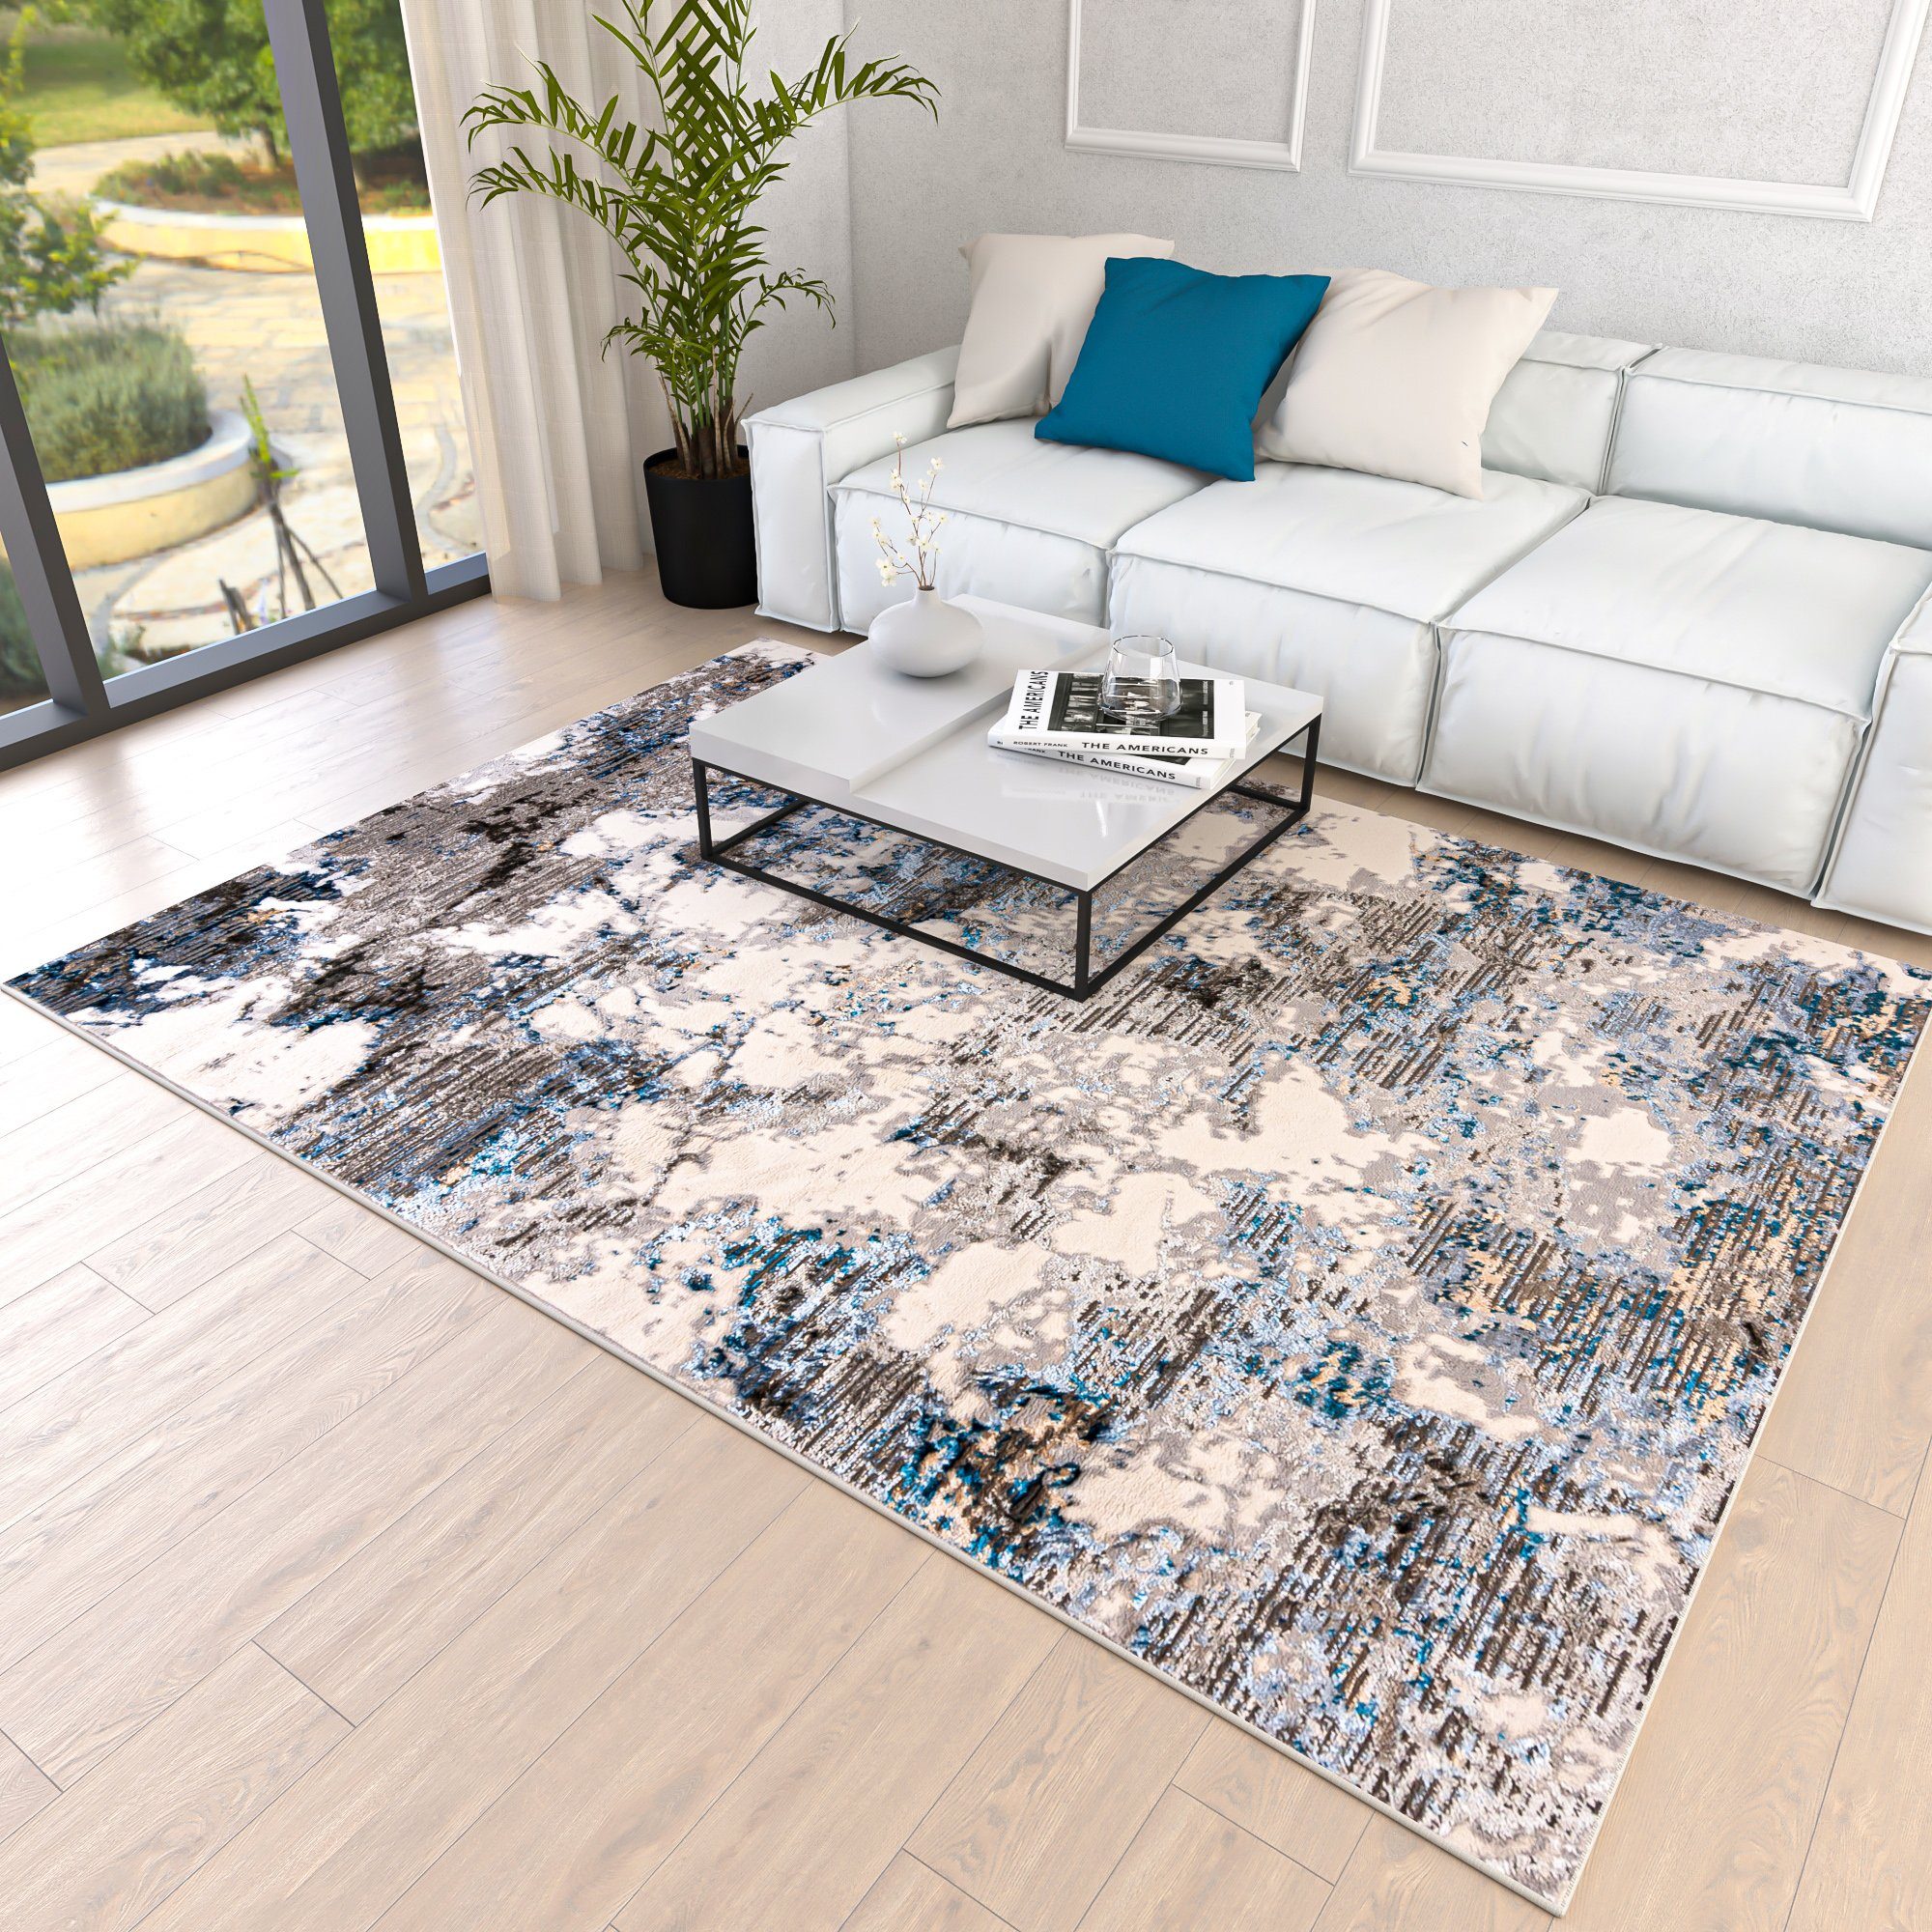 Designteppich Modern Teppich für Wohnzimmer - Abstrakt Muster, Beige Blau Grau, Mazovia, 120 x 170 cm, Abstrakt, Modern, Höhe 8 mm, Kurzflor - niedrige Florhöhe